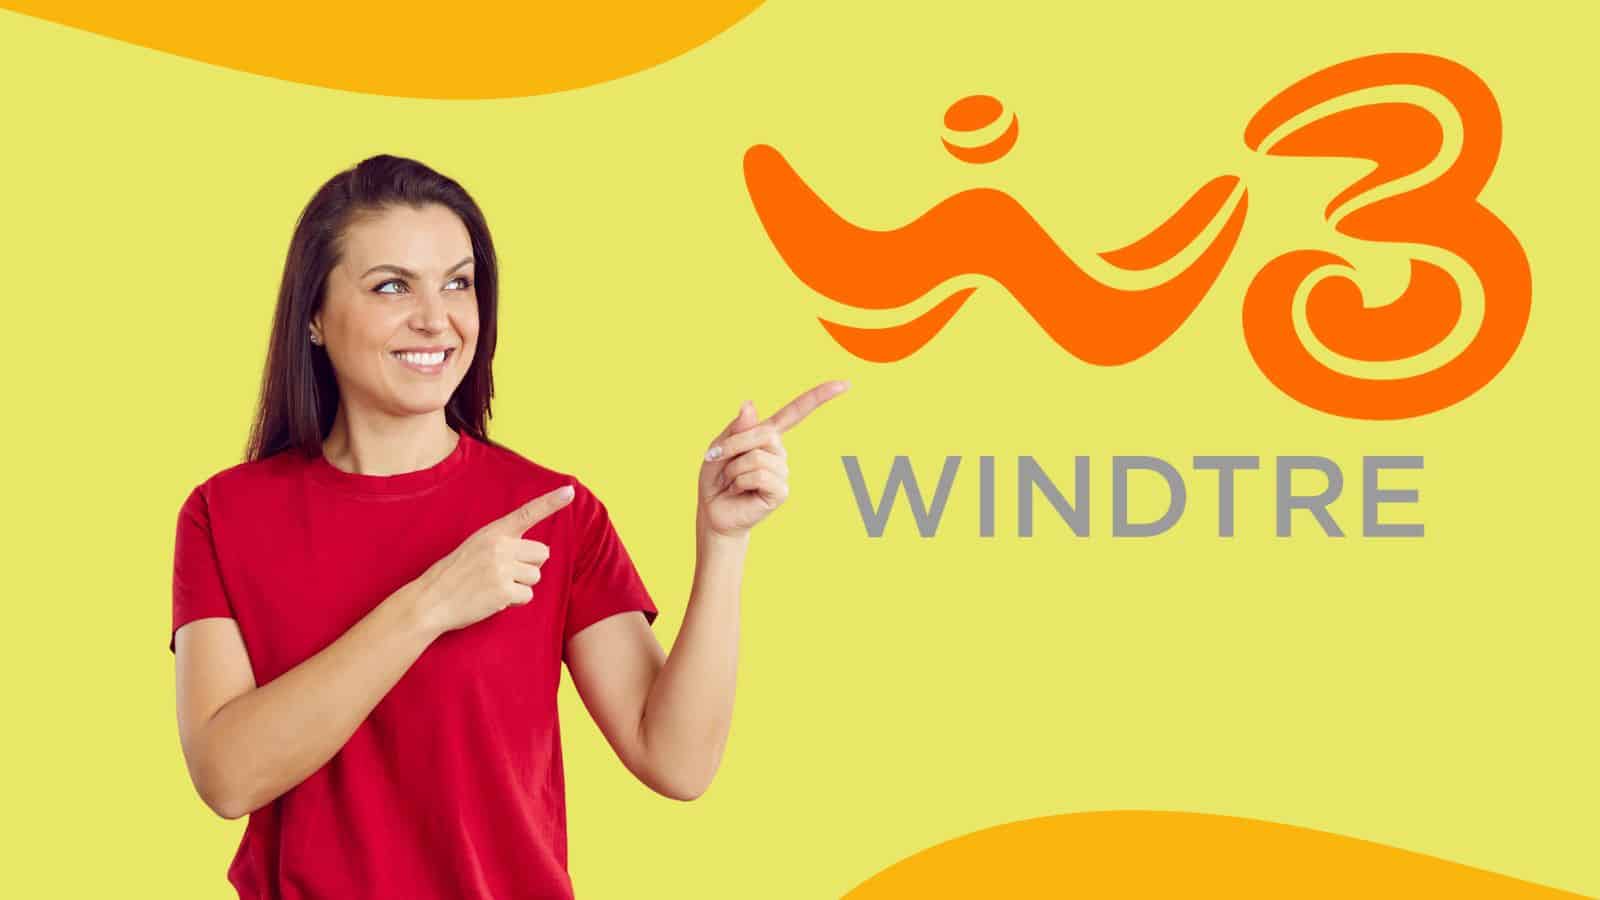 WindTre offerta con smartphone Samsung incluso